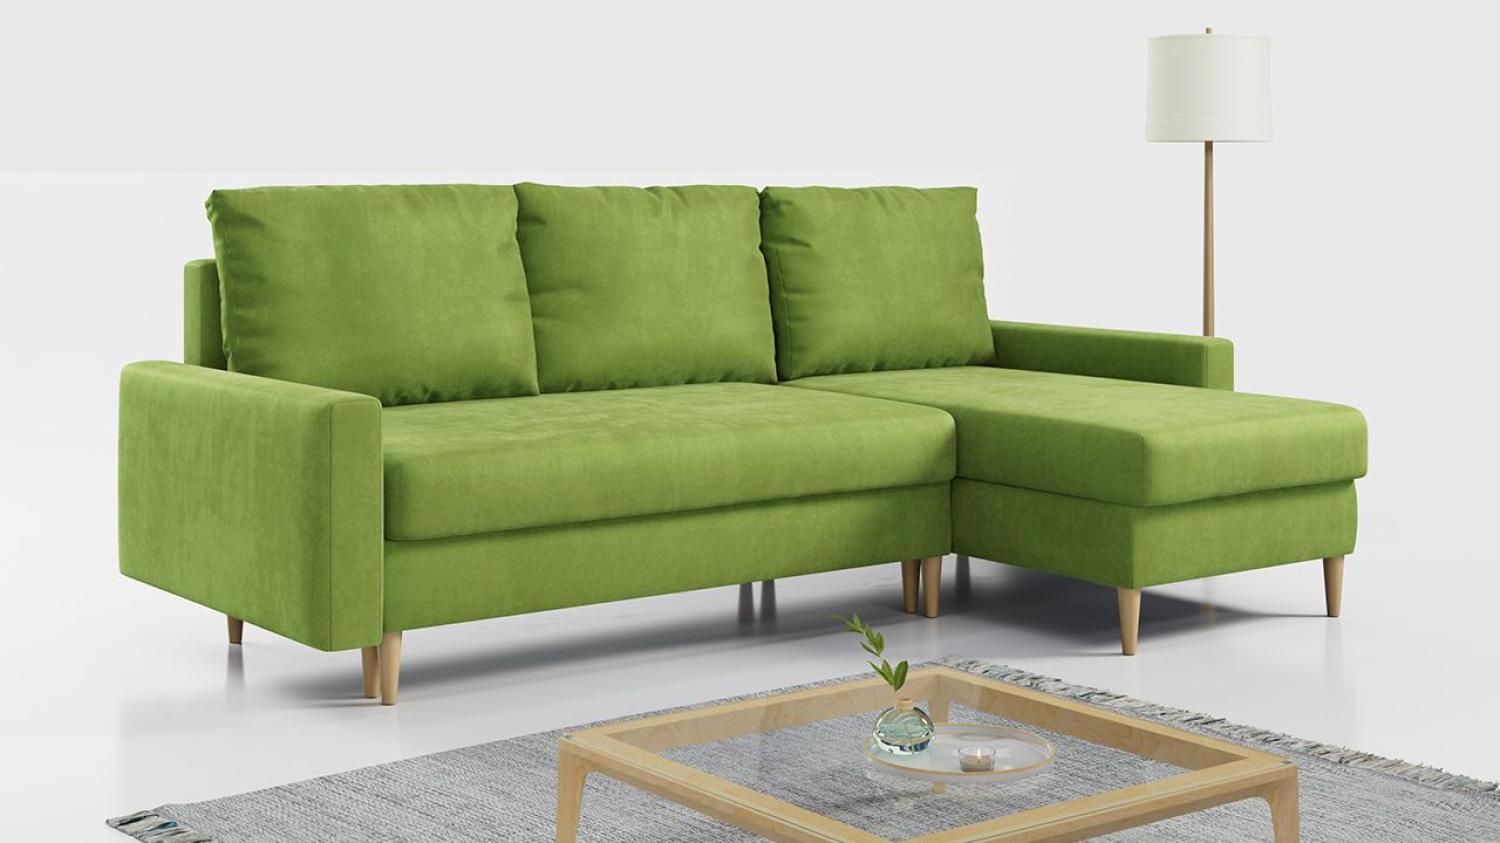 Ecksofa - L-Form Sofa Mit Schlaffunktion - Wohnlandschaft - Wohnzimmer L Couch - Polstersofa mit Bettkasten - Hellgrün LANG Bild 1